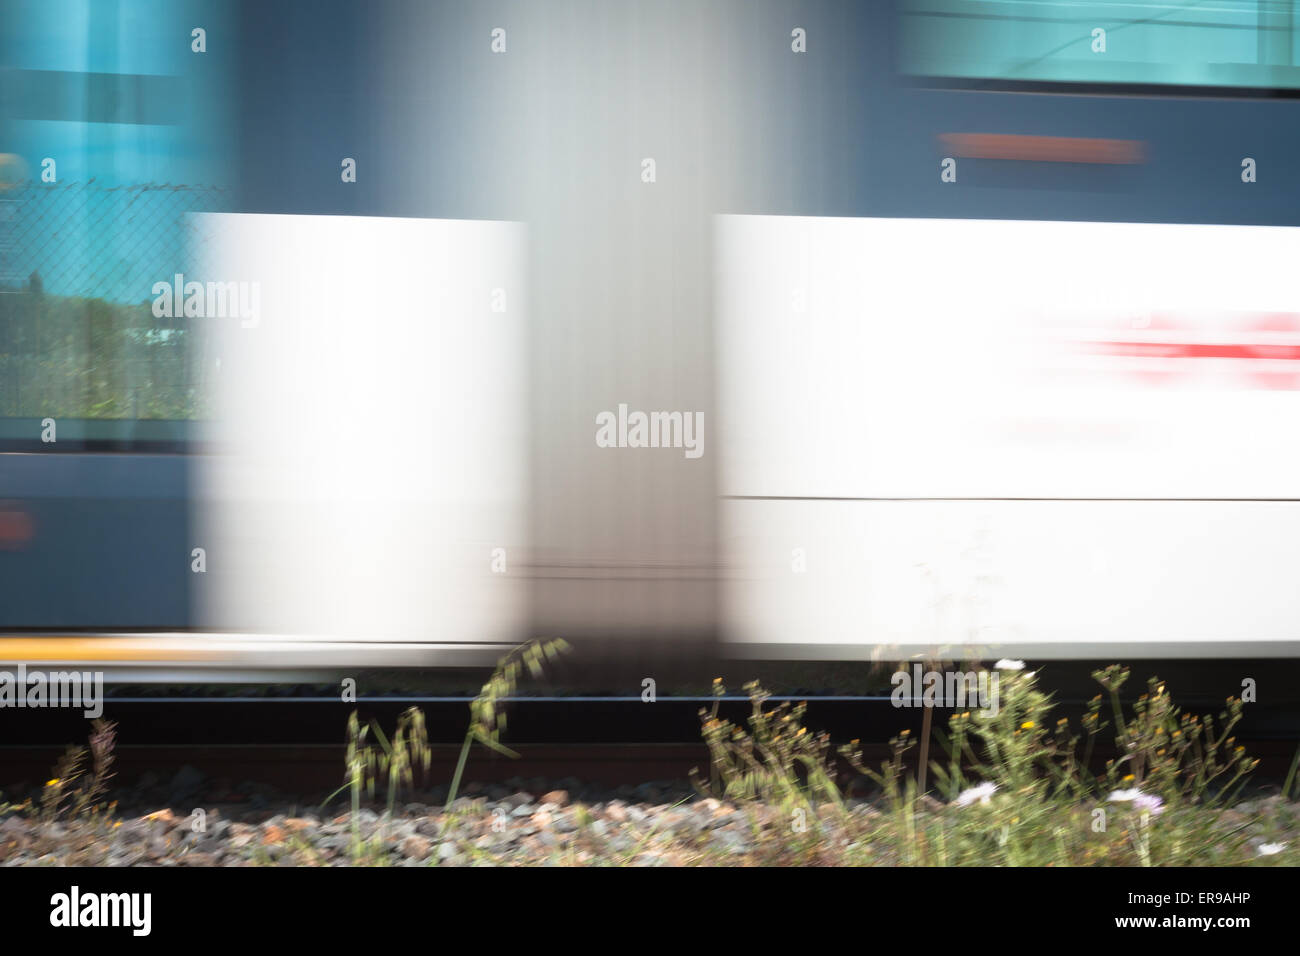 Pilone del treno Velocità. Immagine presa per il passaggio di un treno. Foto Stock